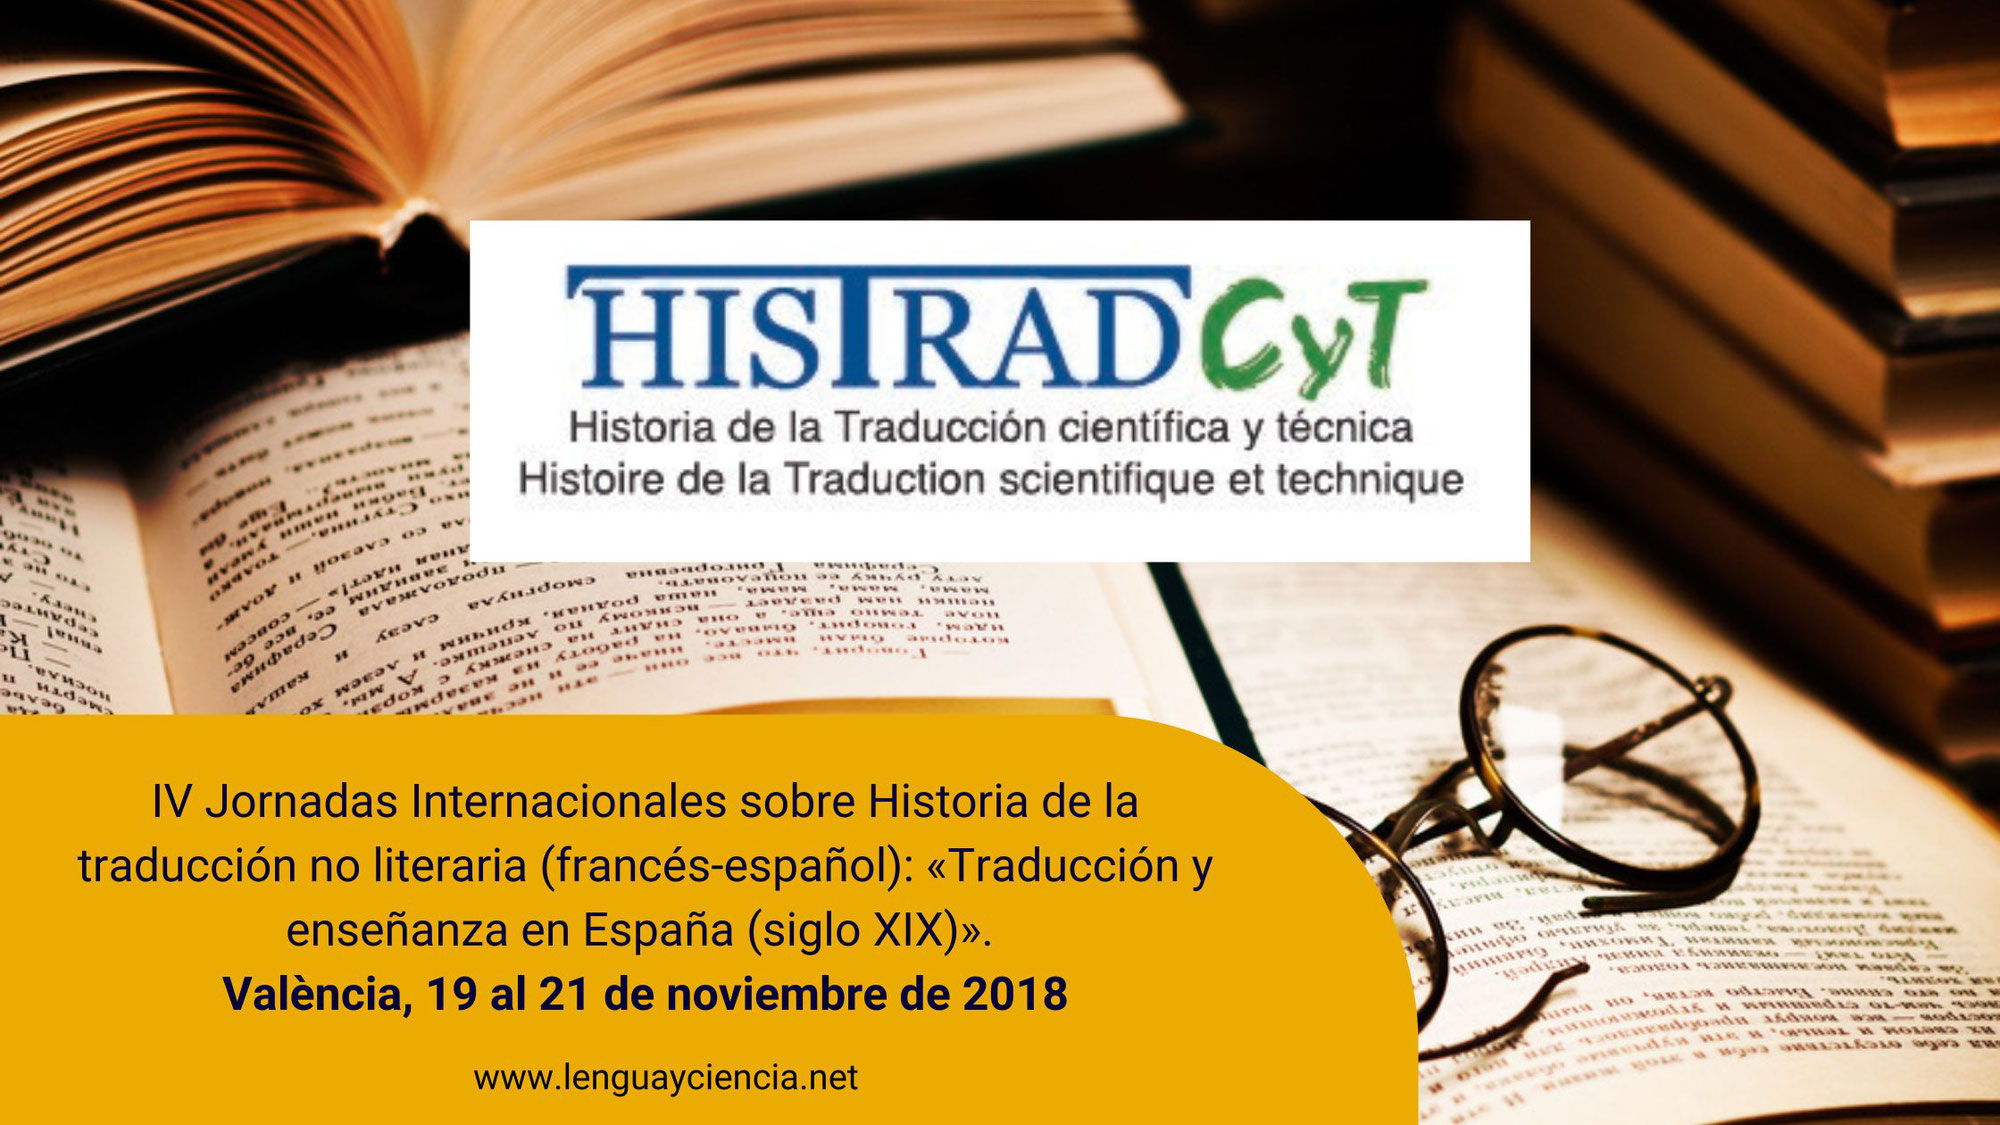 IV Jornadas Internacionales sobre Historia de la traducción no literaria (francés-español). Valencia, noviembre de 2018